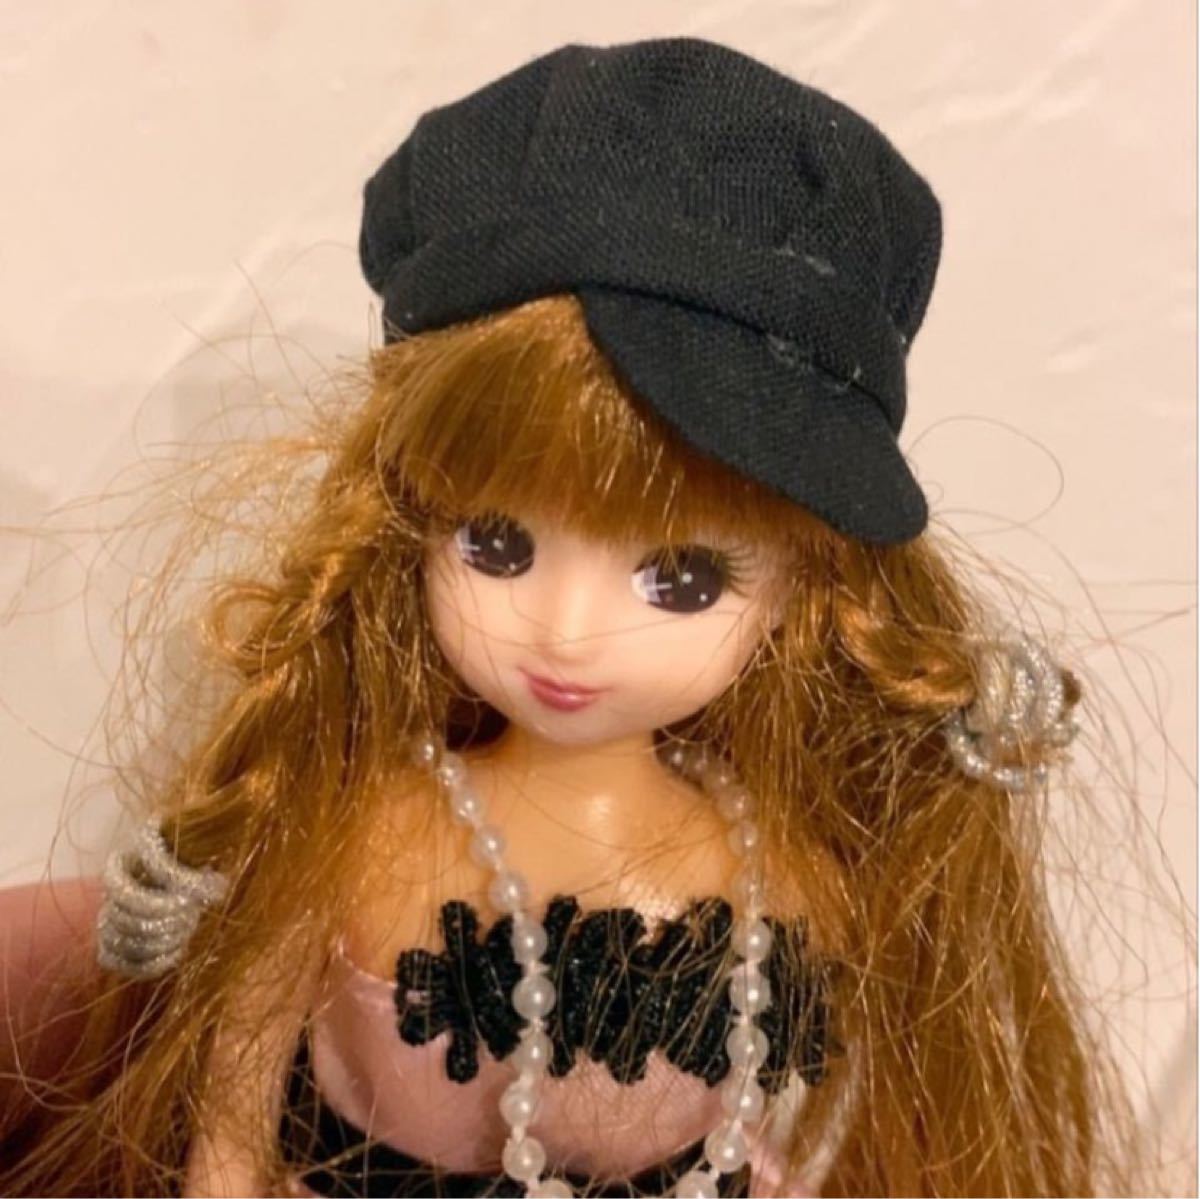 Paypayフリマ 小さい人形がかぶれるシンプル可愛いオシャレな黒キャスケットリカちゃんバービーに